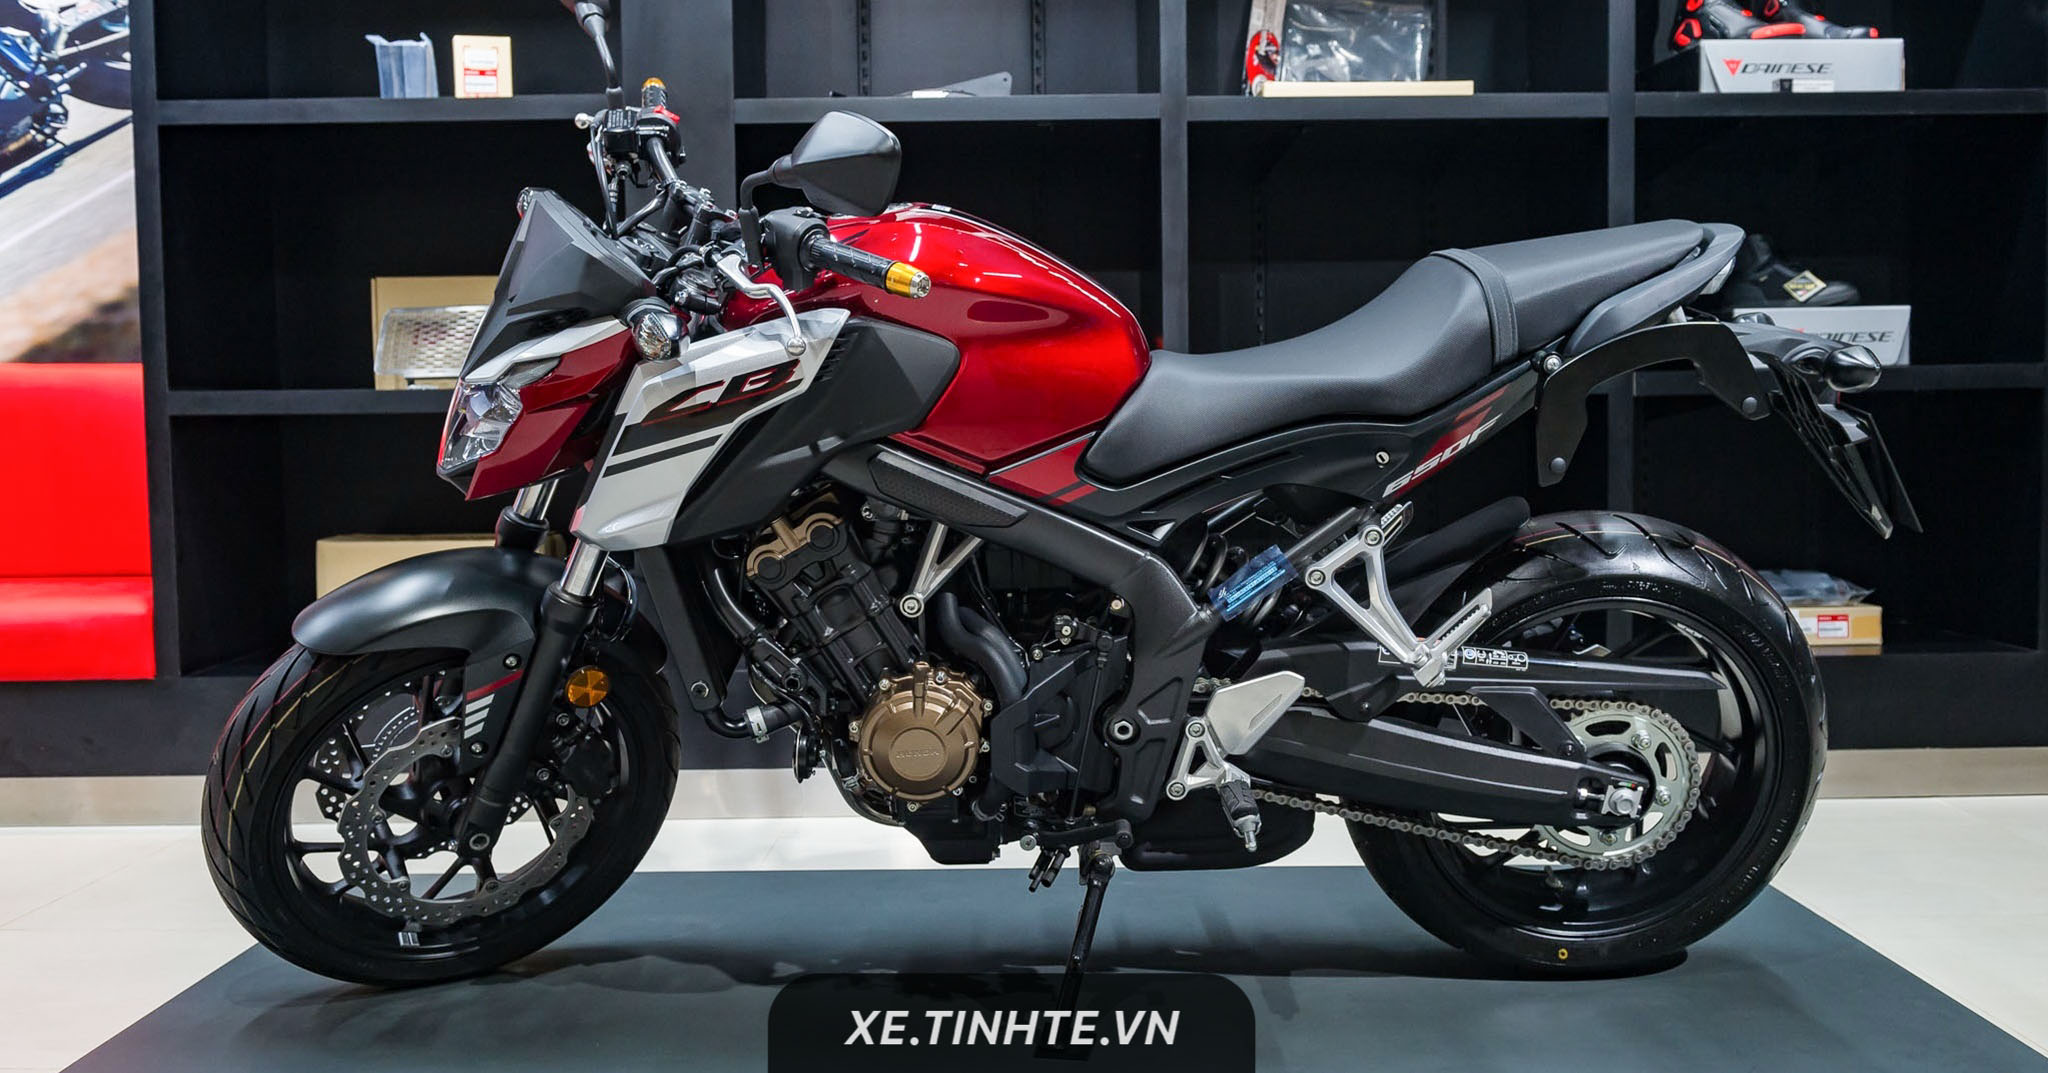 Mô tô Honda Rebel 500cc giá chỉ 180 triệu đồng tại Việt Nam  iSpeed